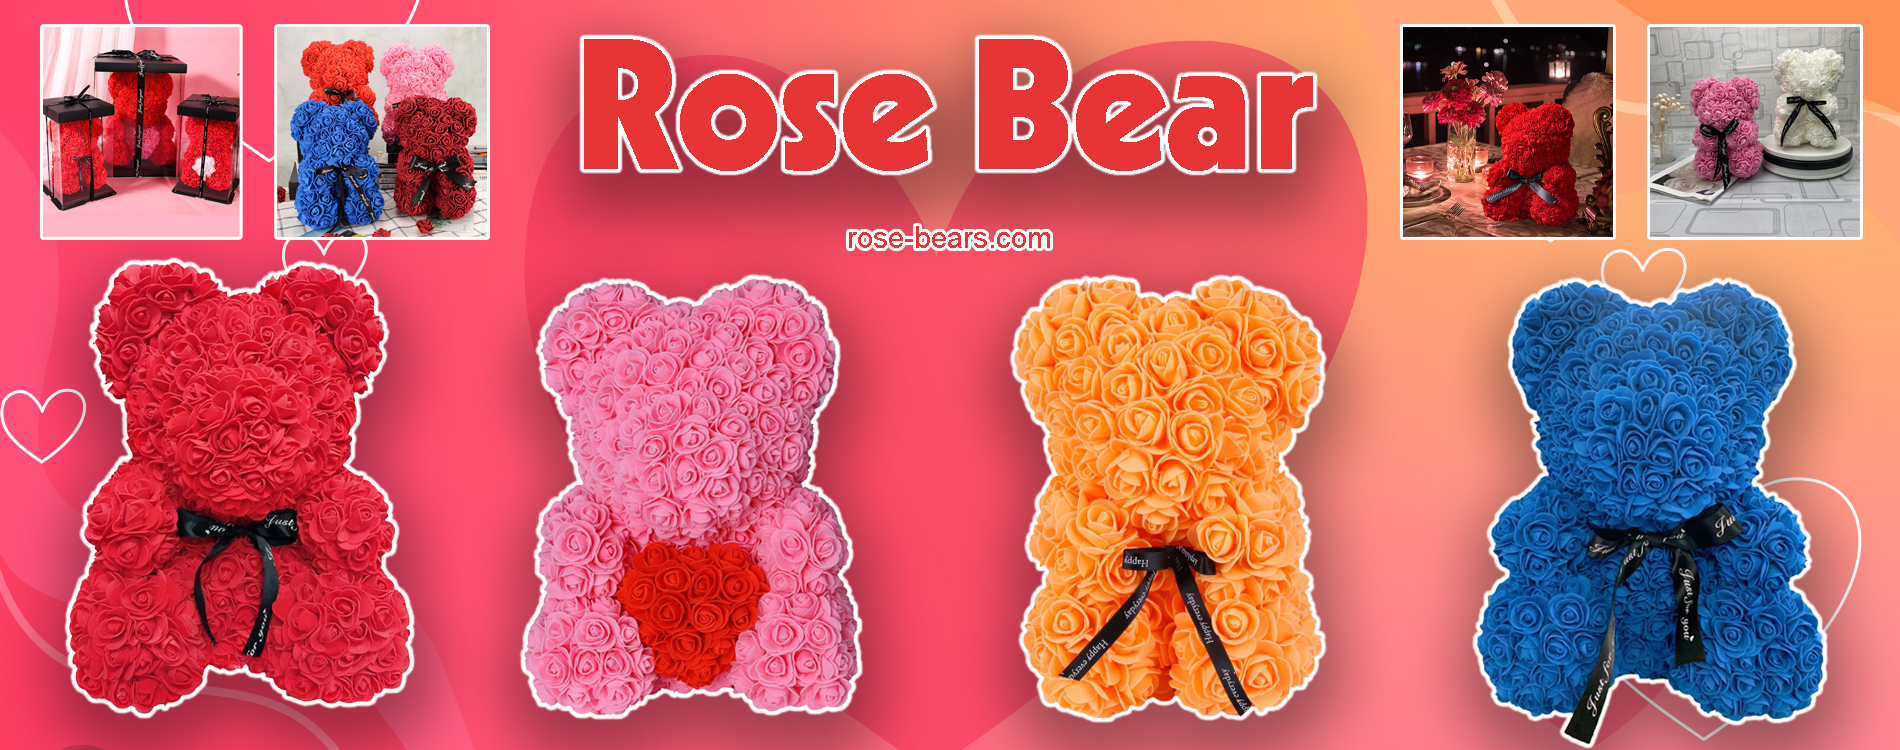 rose-bear-banner